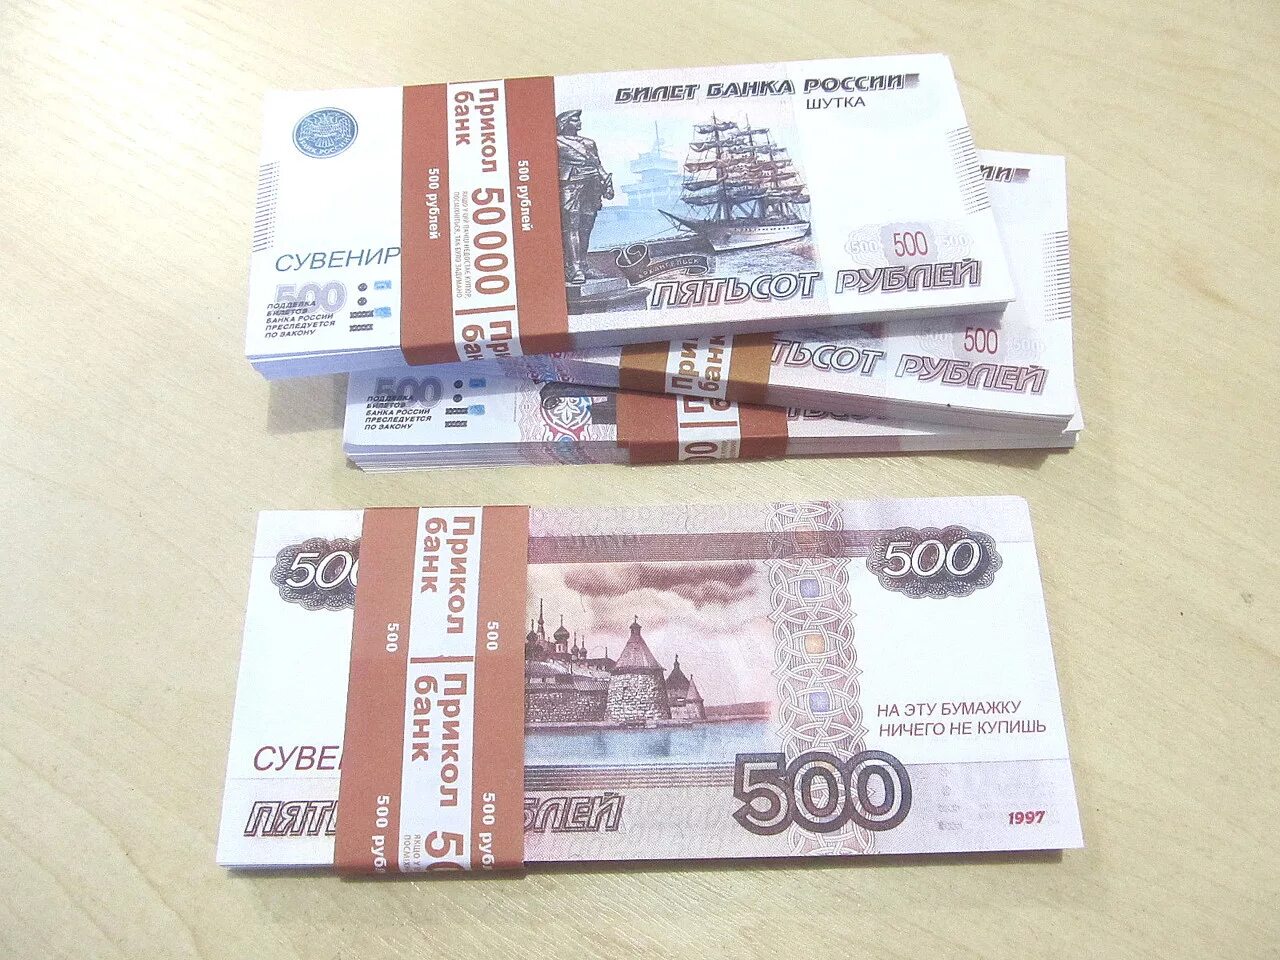 Сувенирные деньги. 500 Рублей пачка. Пачка денег 500 рублей. Пачка по 500 рублей.